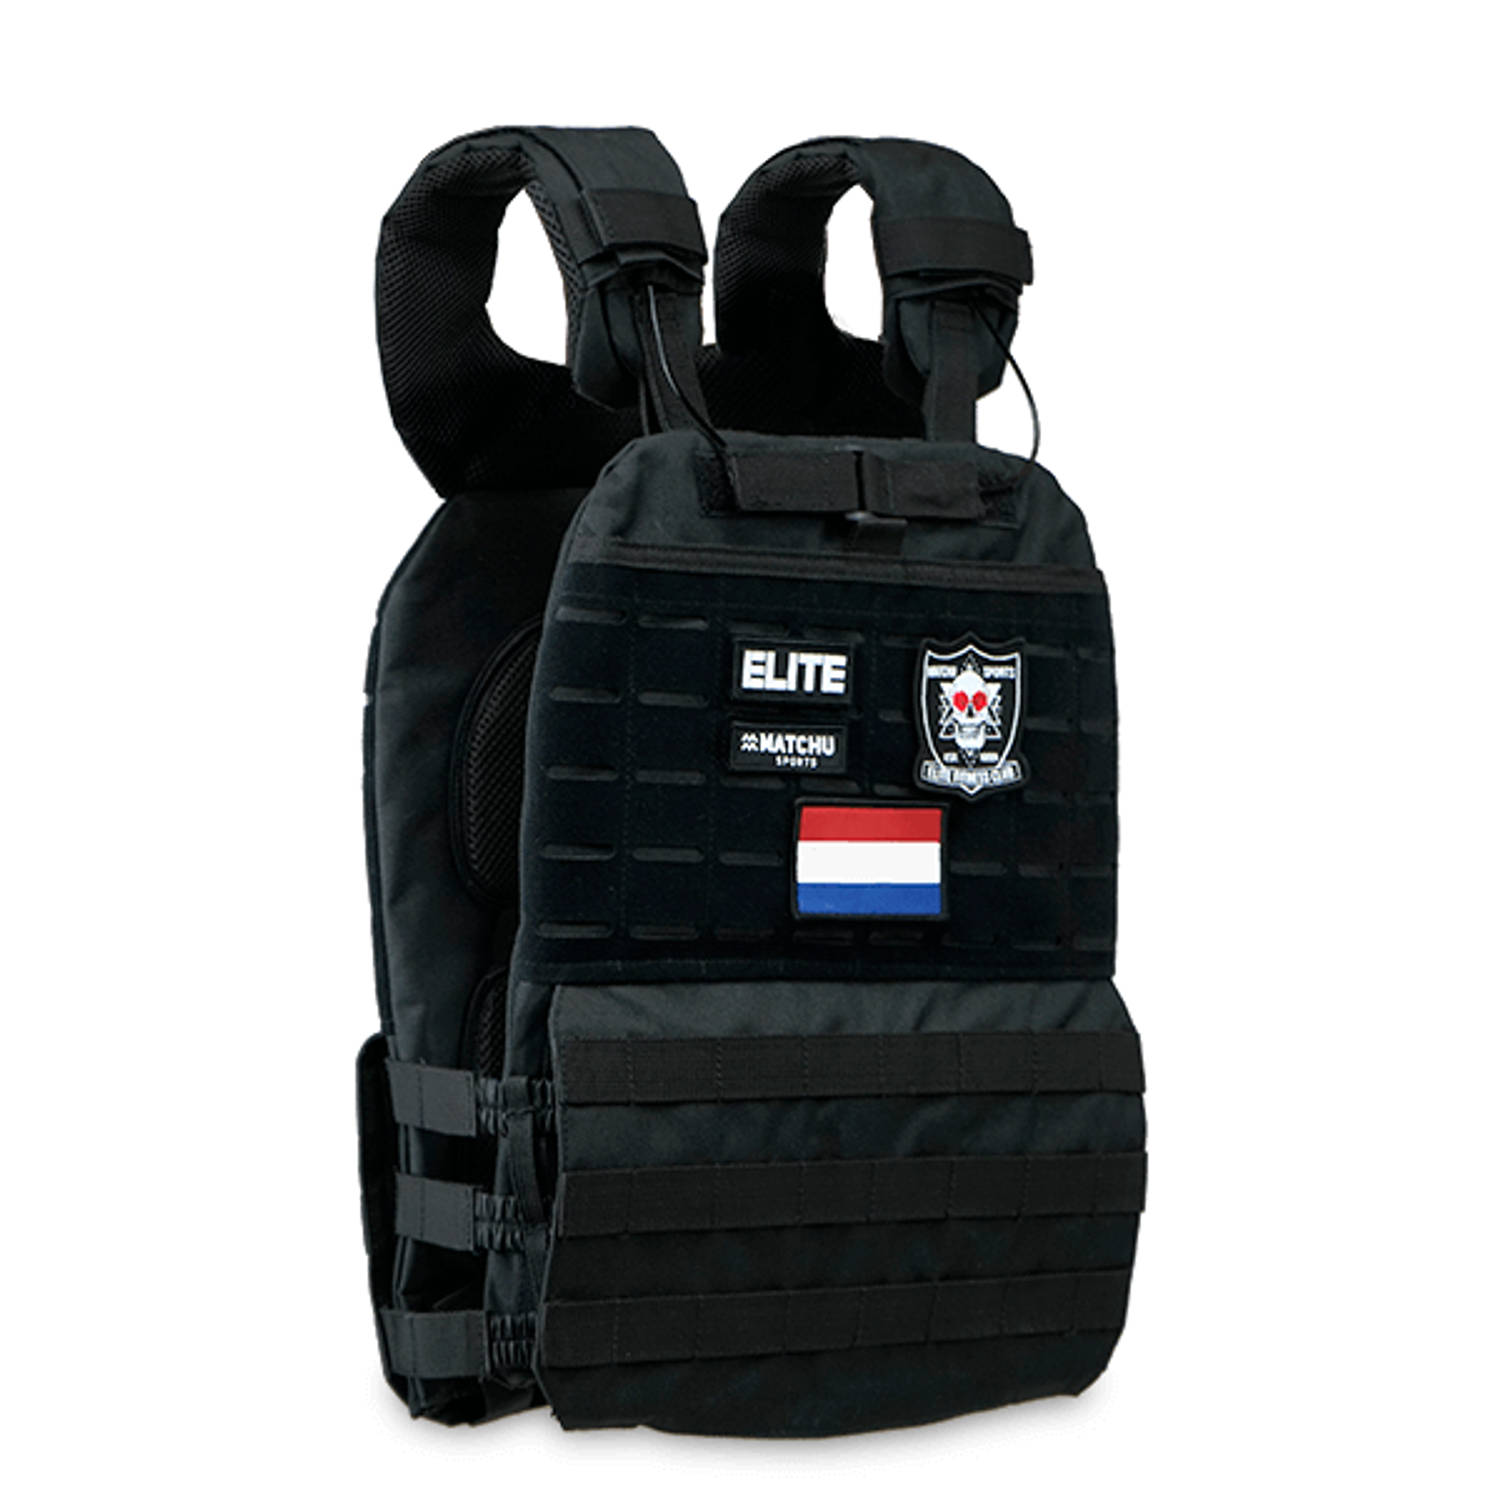 Matchu Sports - Tactical weight vest - Incl. platenset - Totaal 19.6 KG - Plate carrier